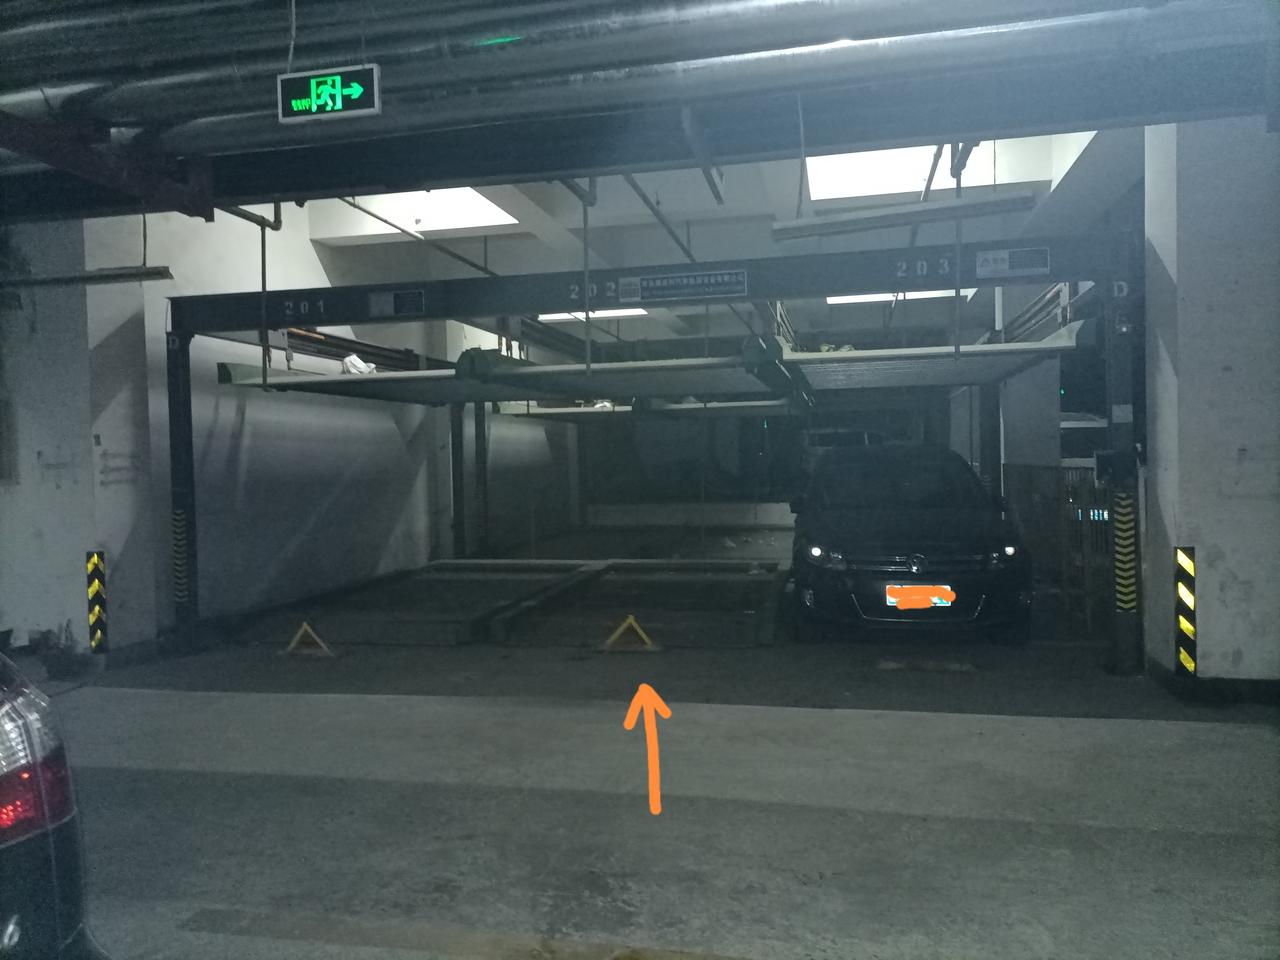 比亚迪秦PLUS DM-i 地面中间是的车位，这种两层的移动车位可以安装充电桩吗？的车位距墙有一个车位阻隔，可以